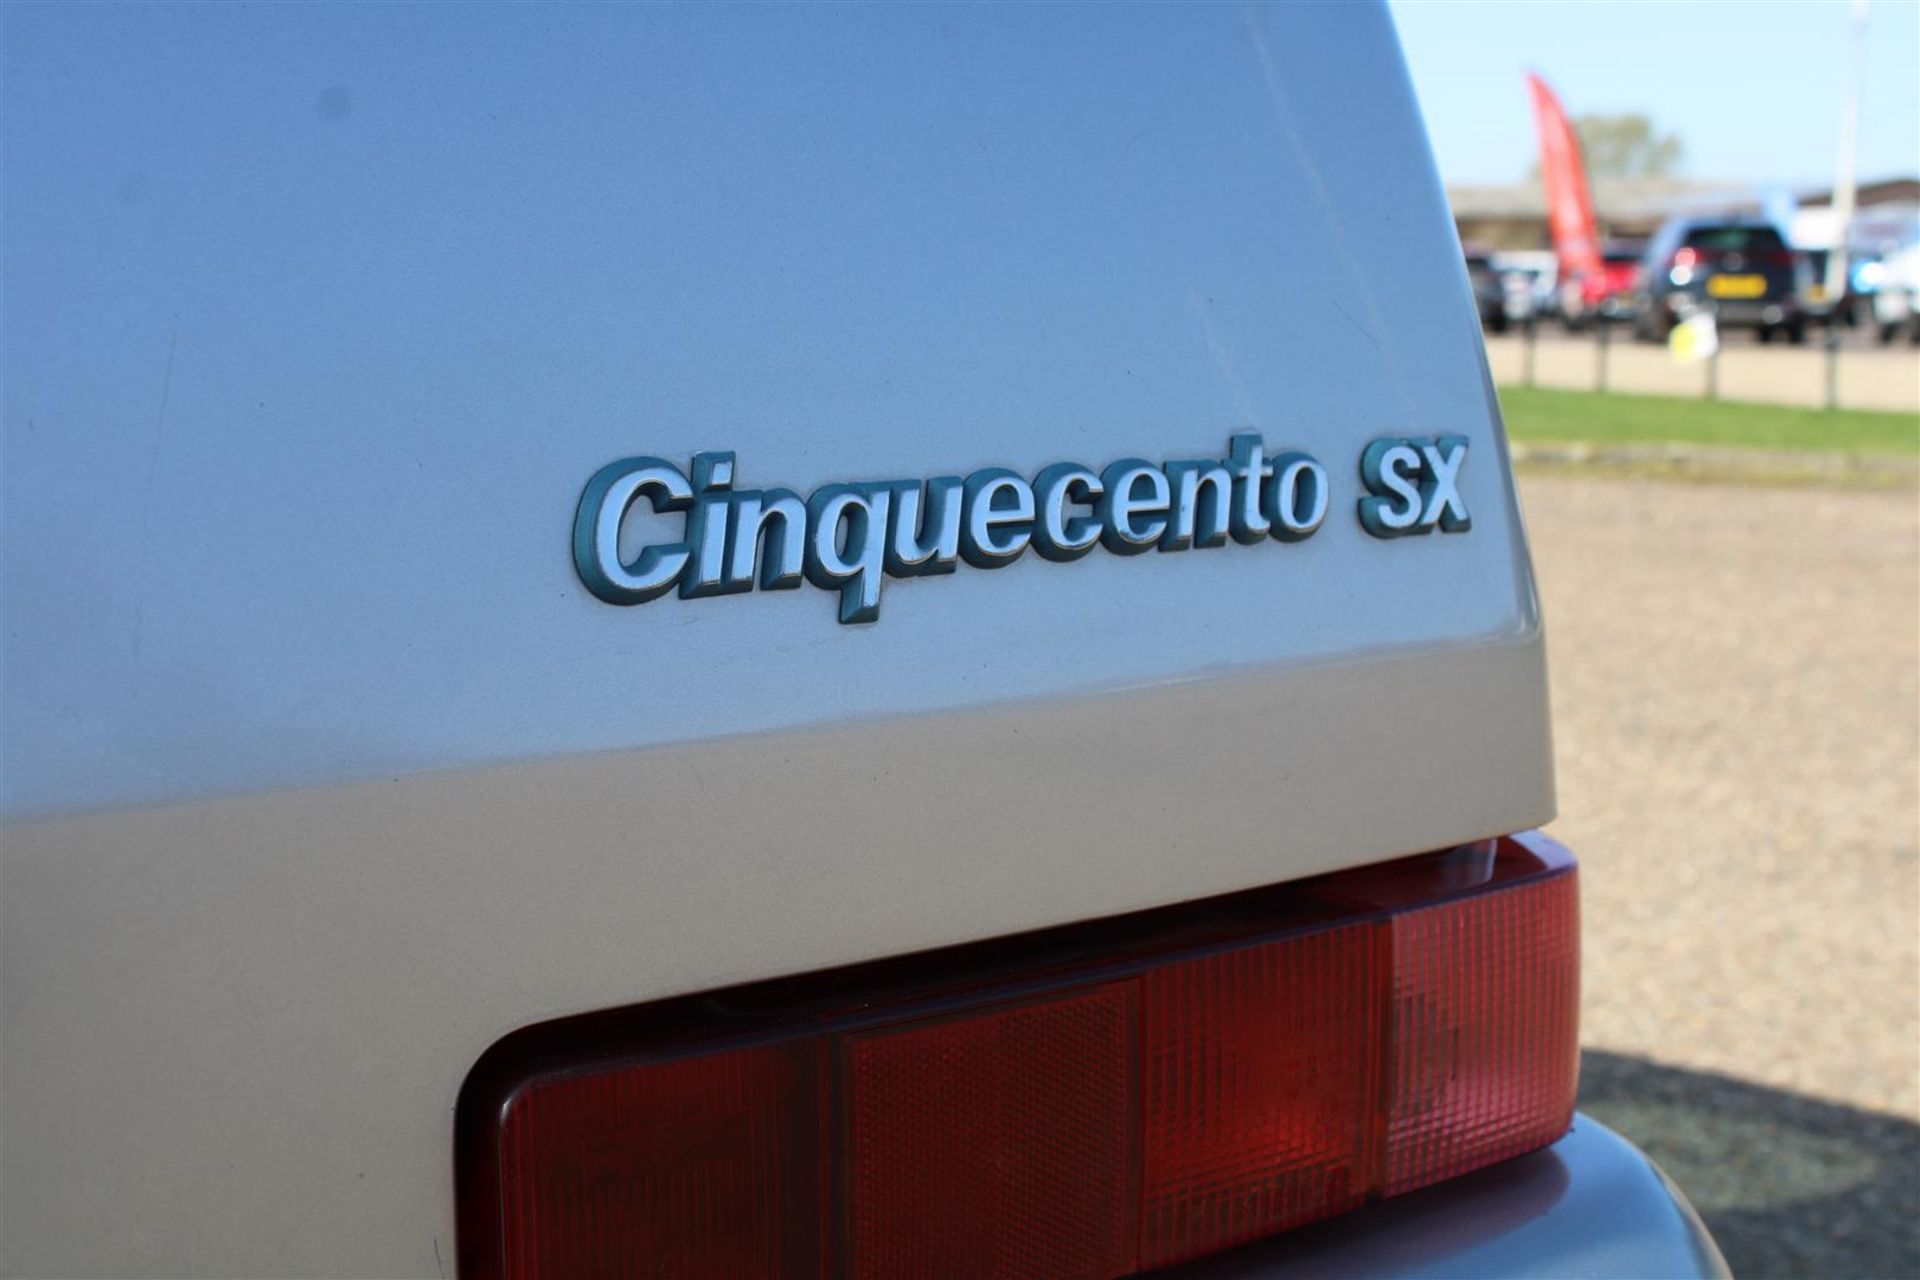 1998 Fiat Cinquecento SX - Image 25 of 25